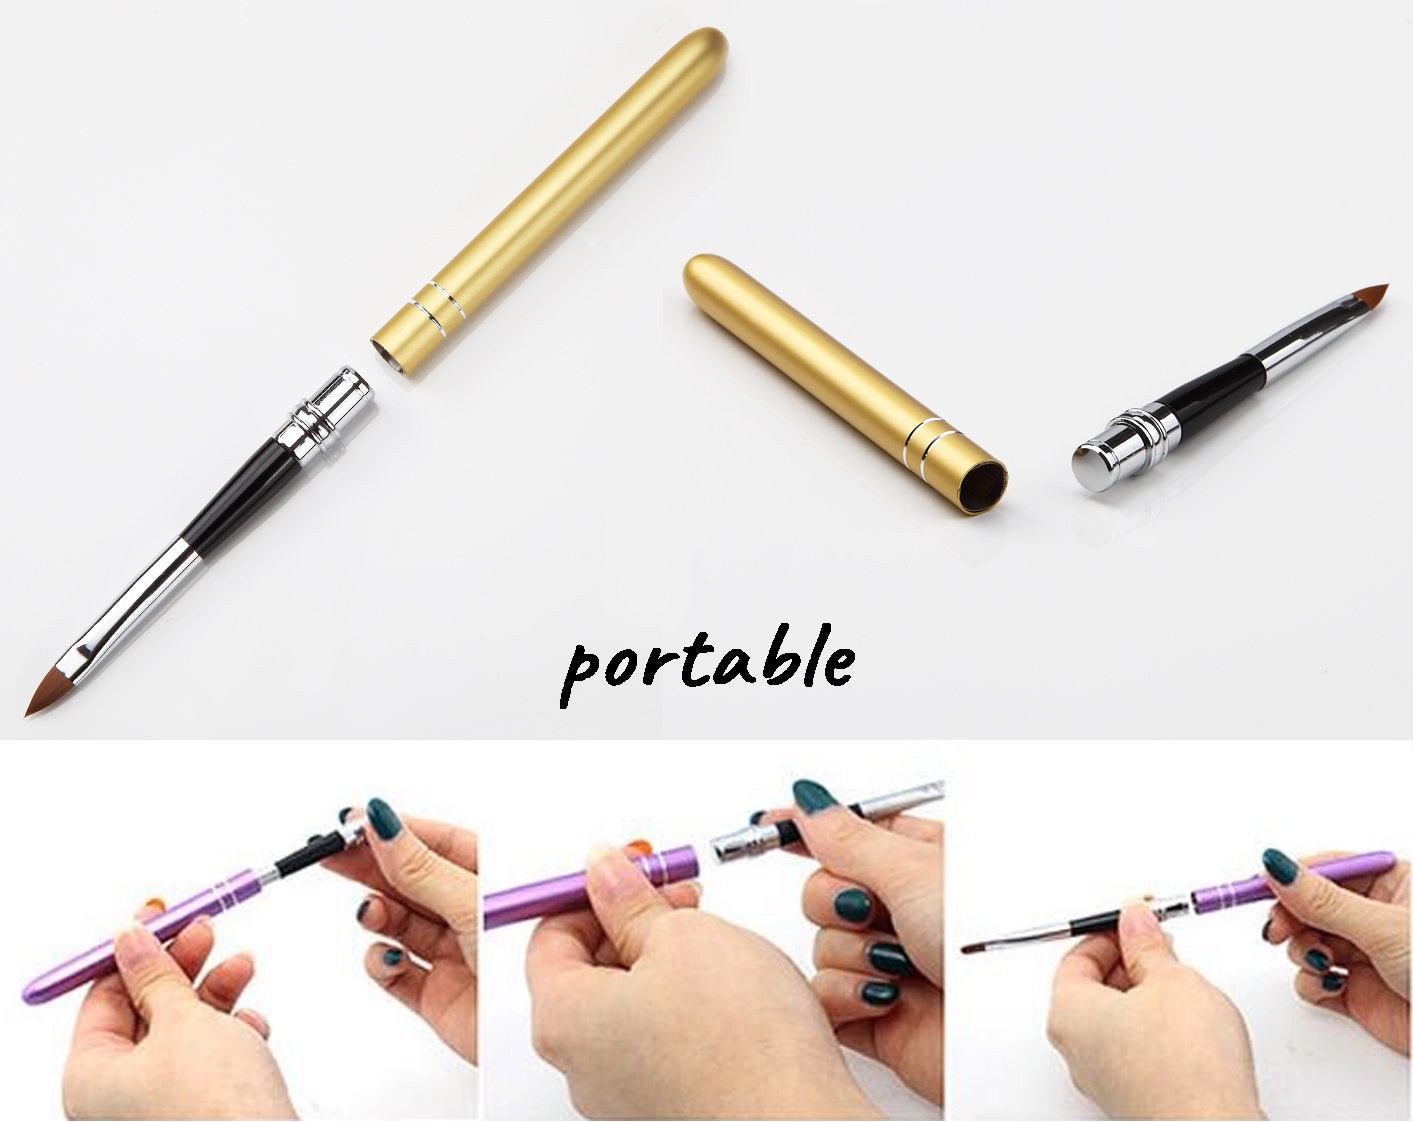 10 pcs Nail Brushes 3D Nail Art Painting Brush Pen Set Colorful Metal For UV Gel